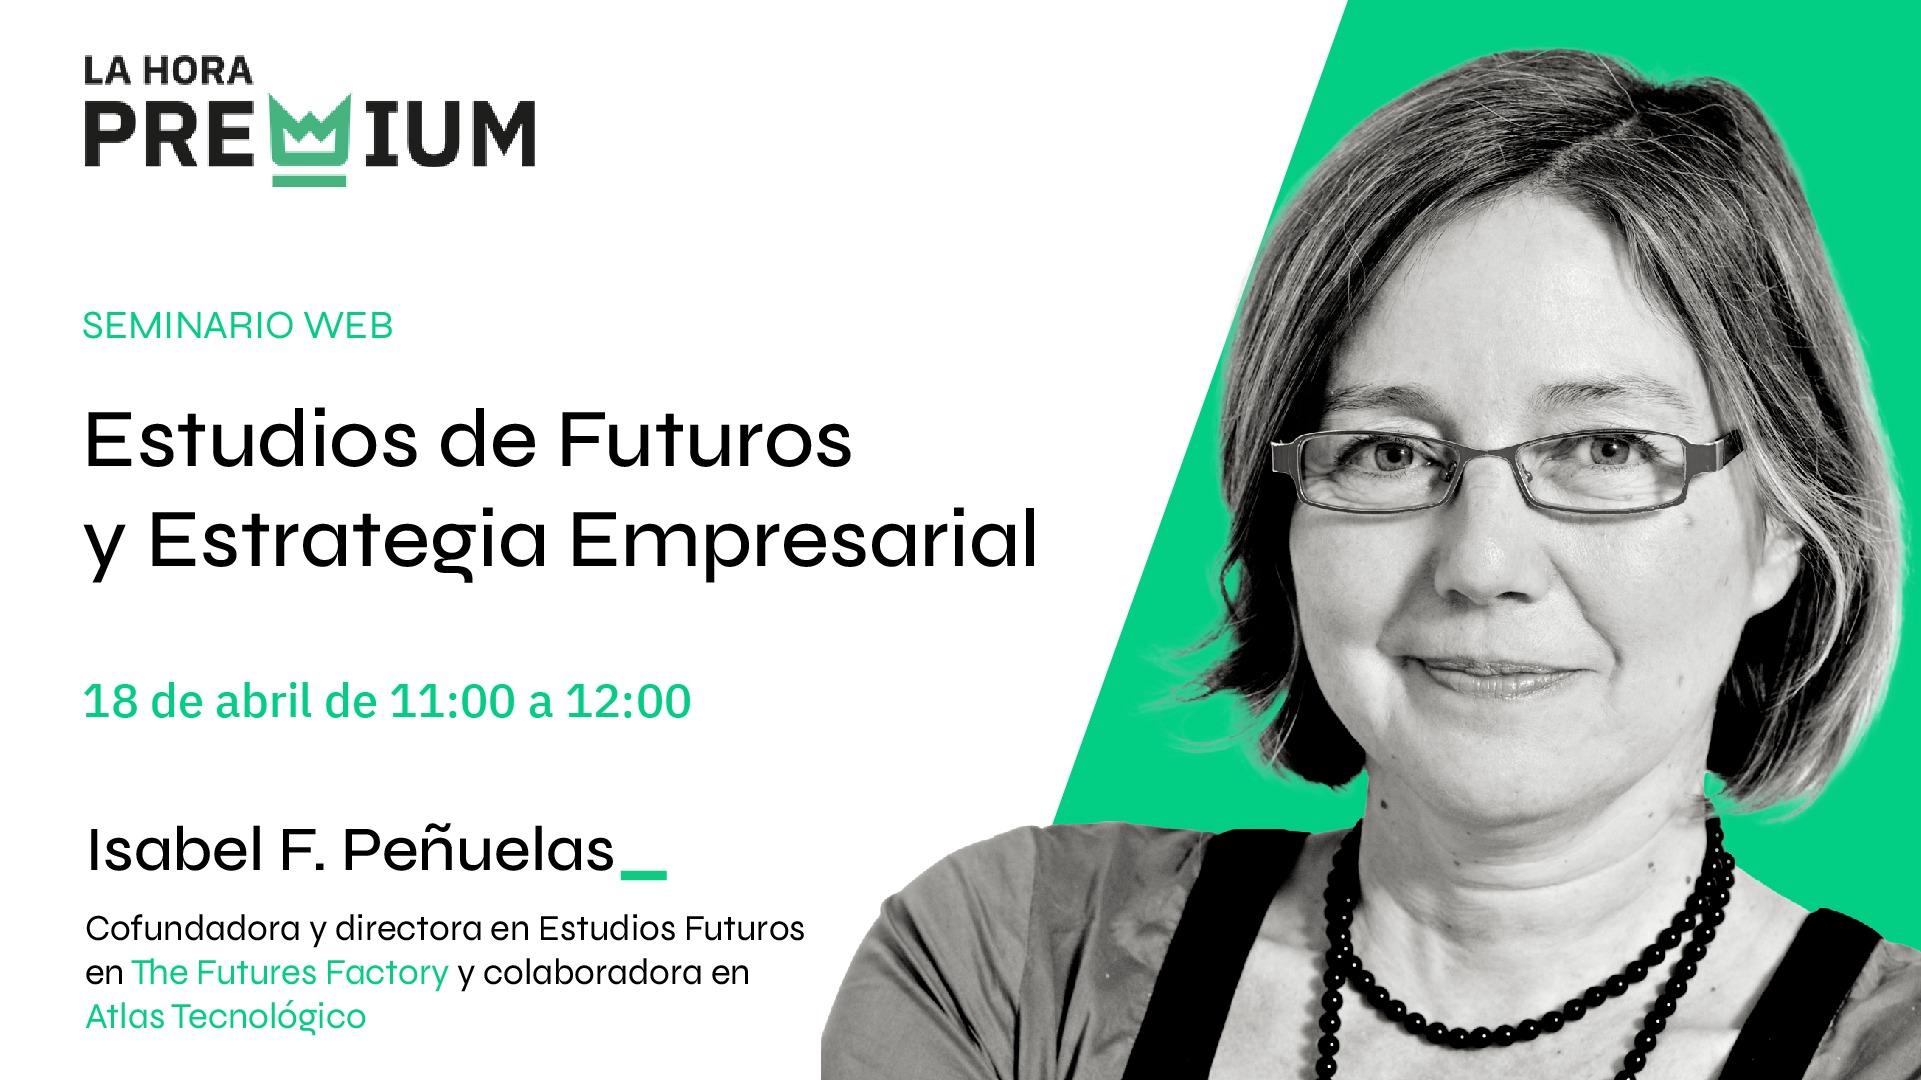 Isabel Fernández Peñuelas hablará sobre estudios de futuros y estrategia empresarial durante la próxima Hora Premium